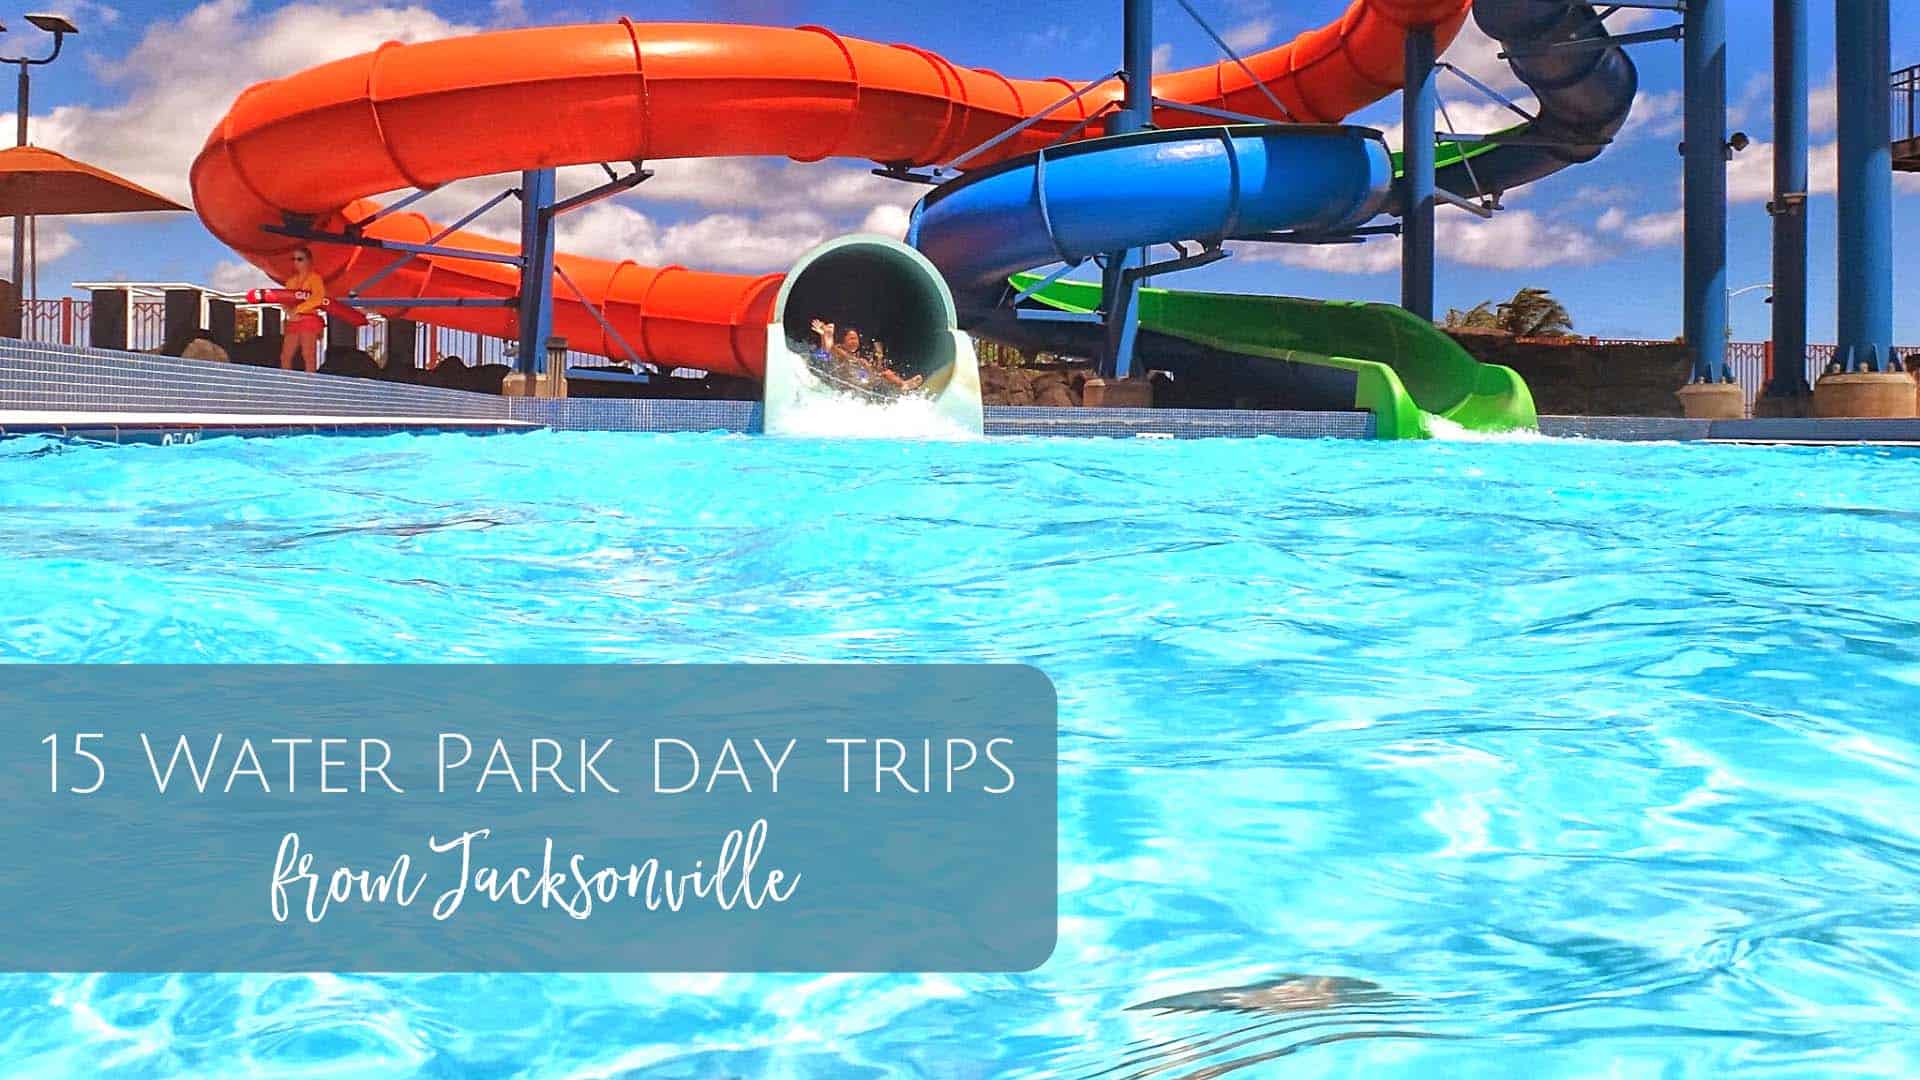 Paradise Park  Jacksonville Parks and Rec